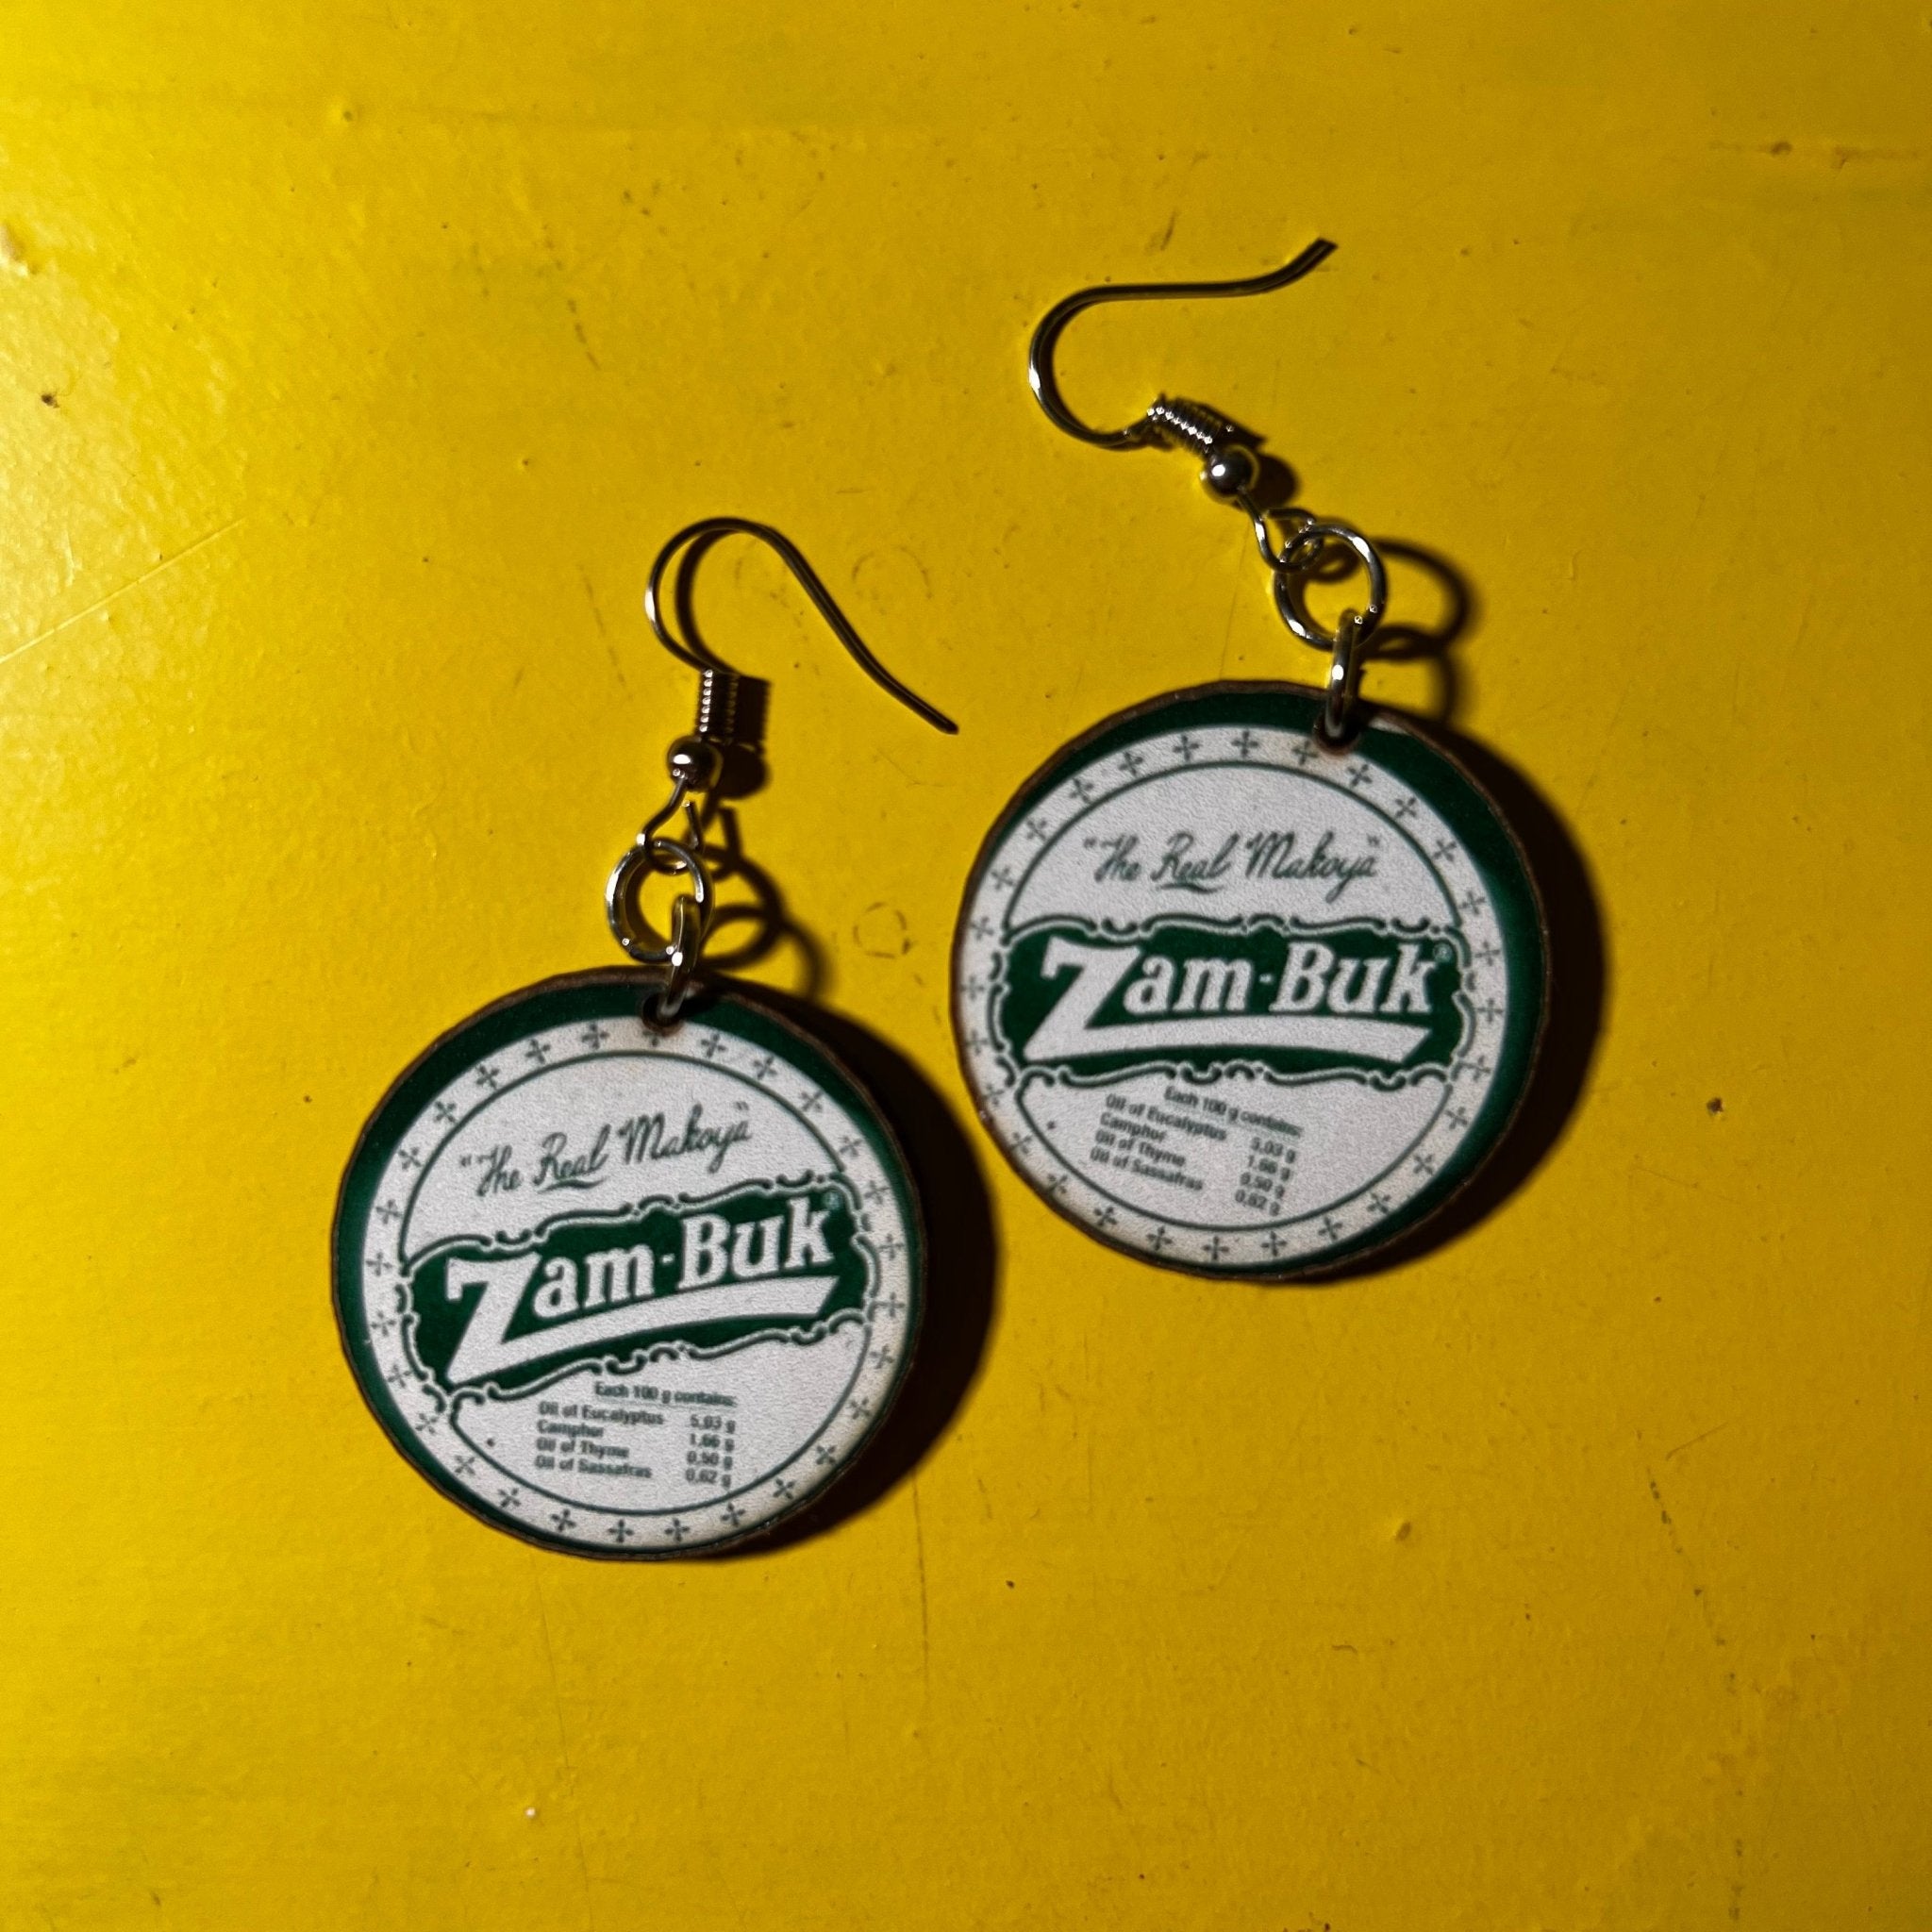 Zam-Buk earrings